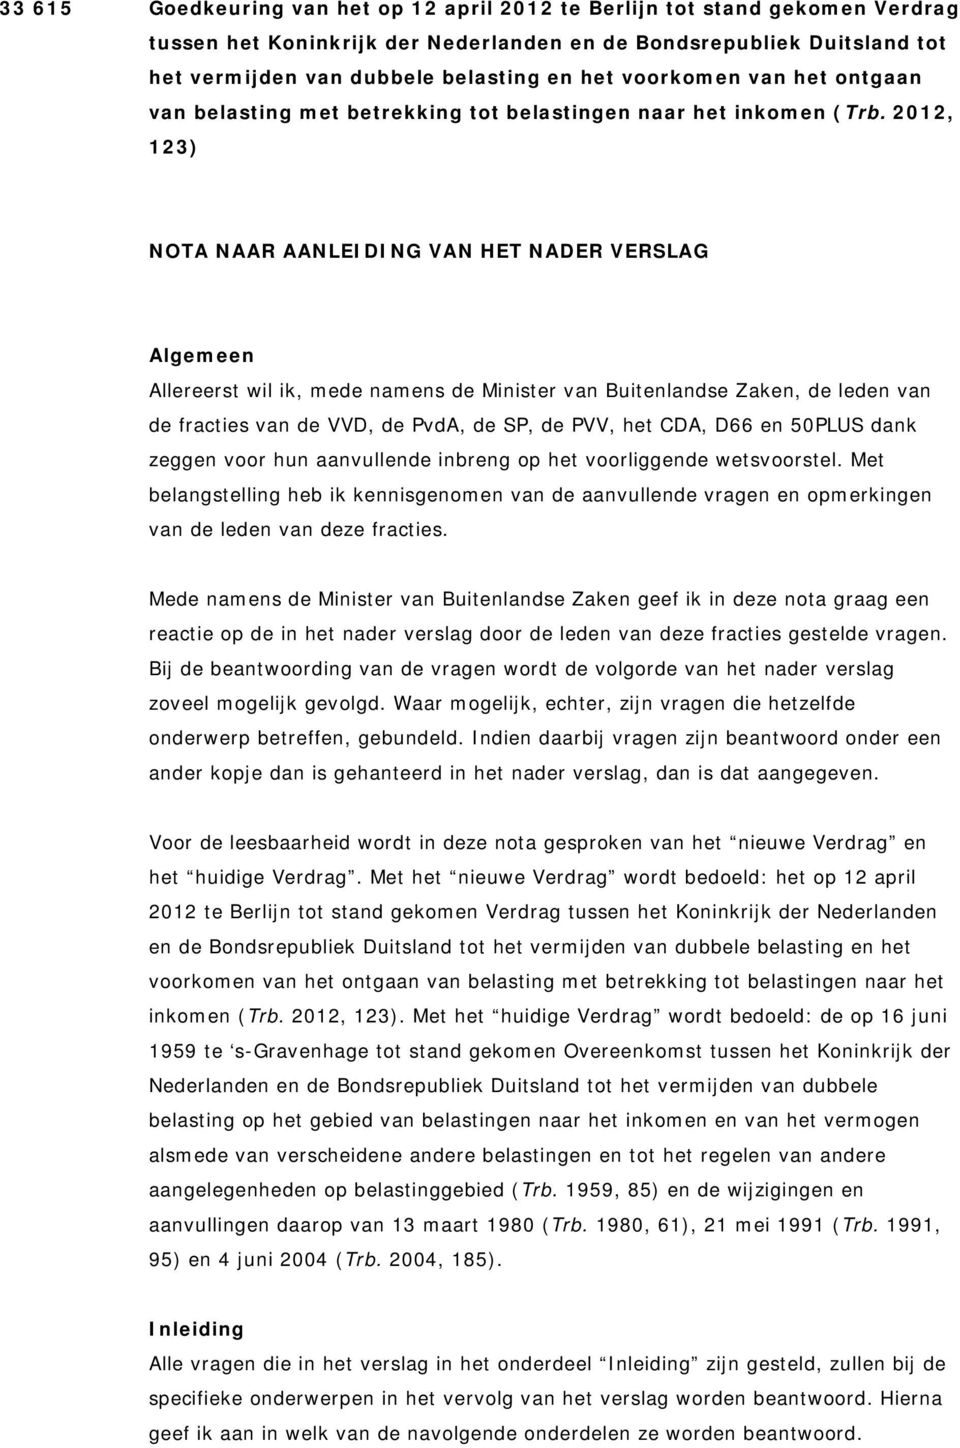 2012, 123) NOTA NAAR AANLEIDING VAN HET NADER VERSLAG Algemeen Allereerst wil ik, mede namens de Minister van Buitenlandse Zaken, de leden van de fracties van de VVD, de PvdA, de SP, de PVV, het CDA,